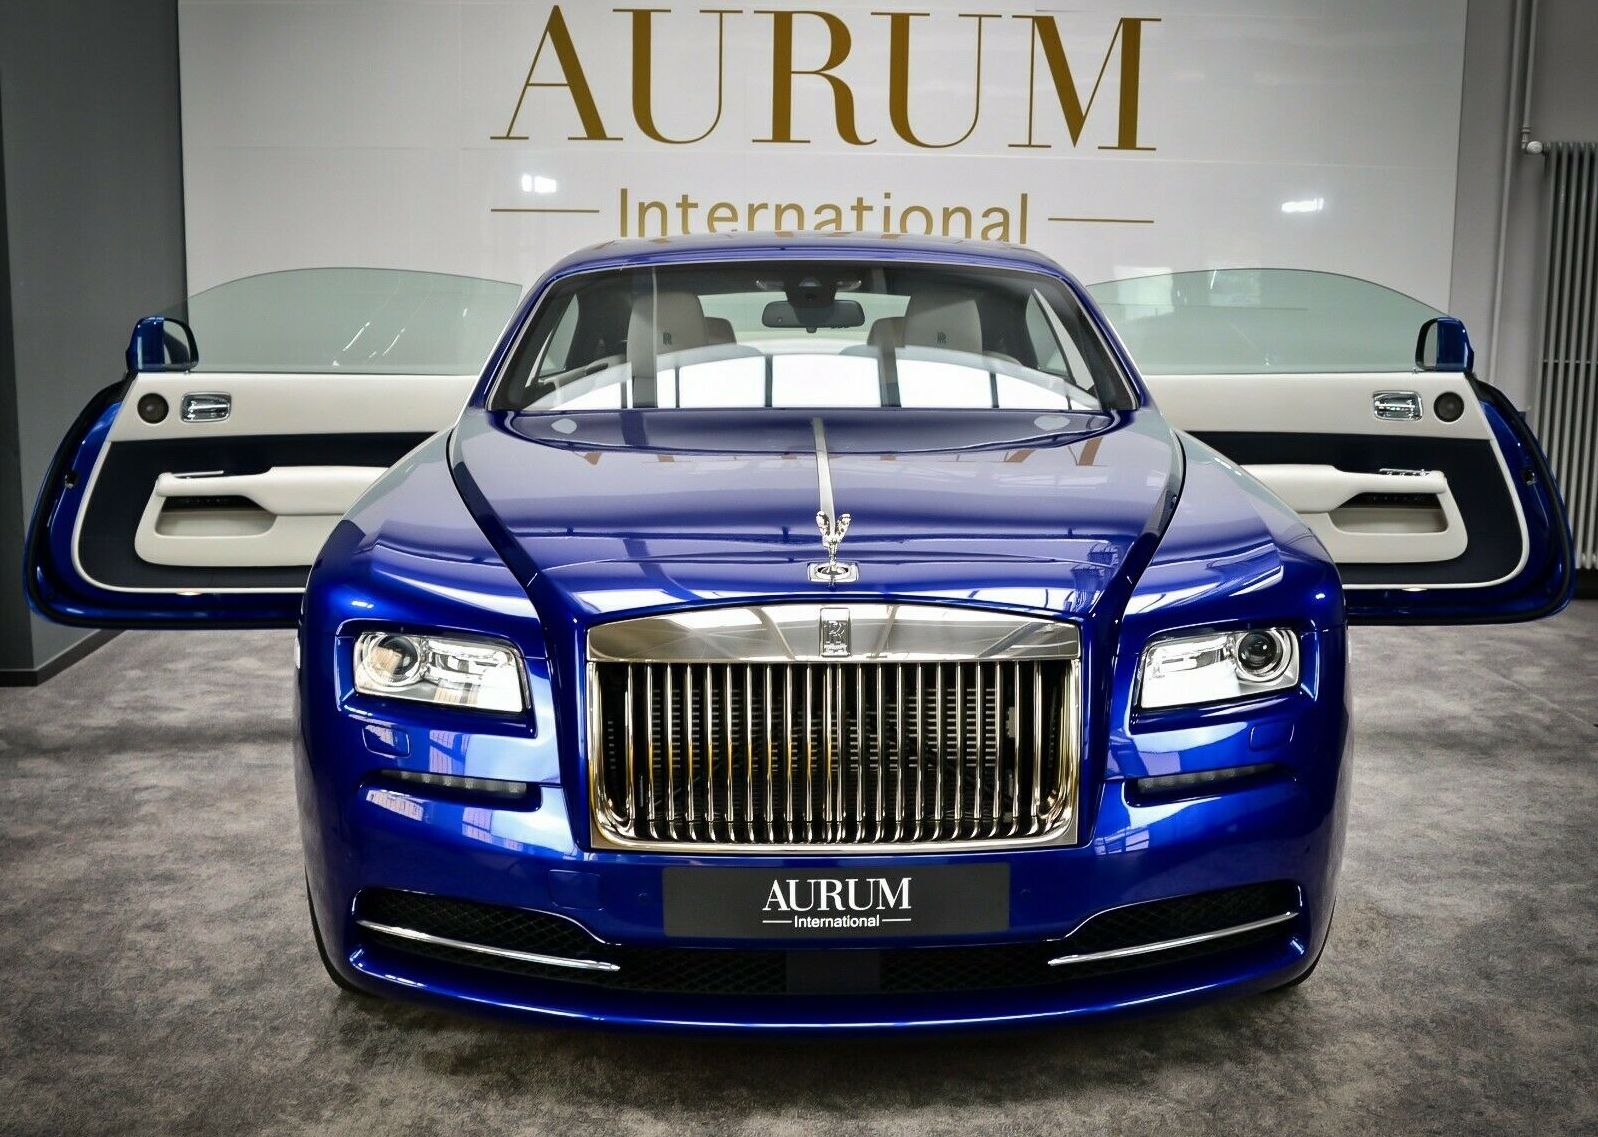 Chiêm ngưỡng Rolls Royce Wraith có màu cực độc